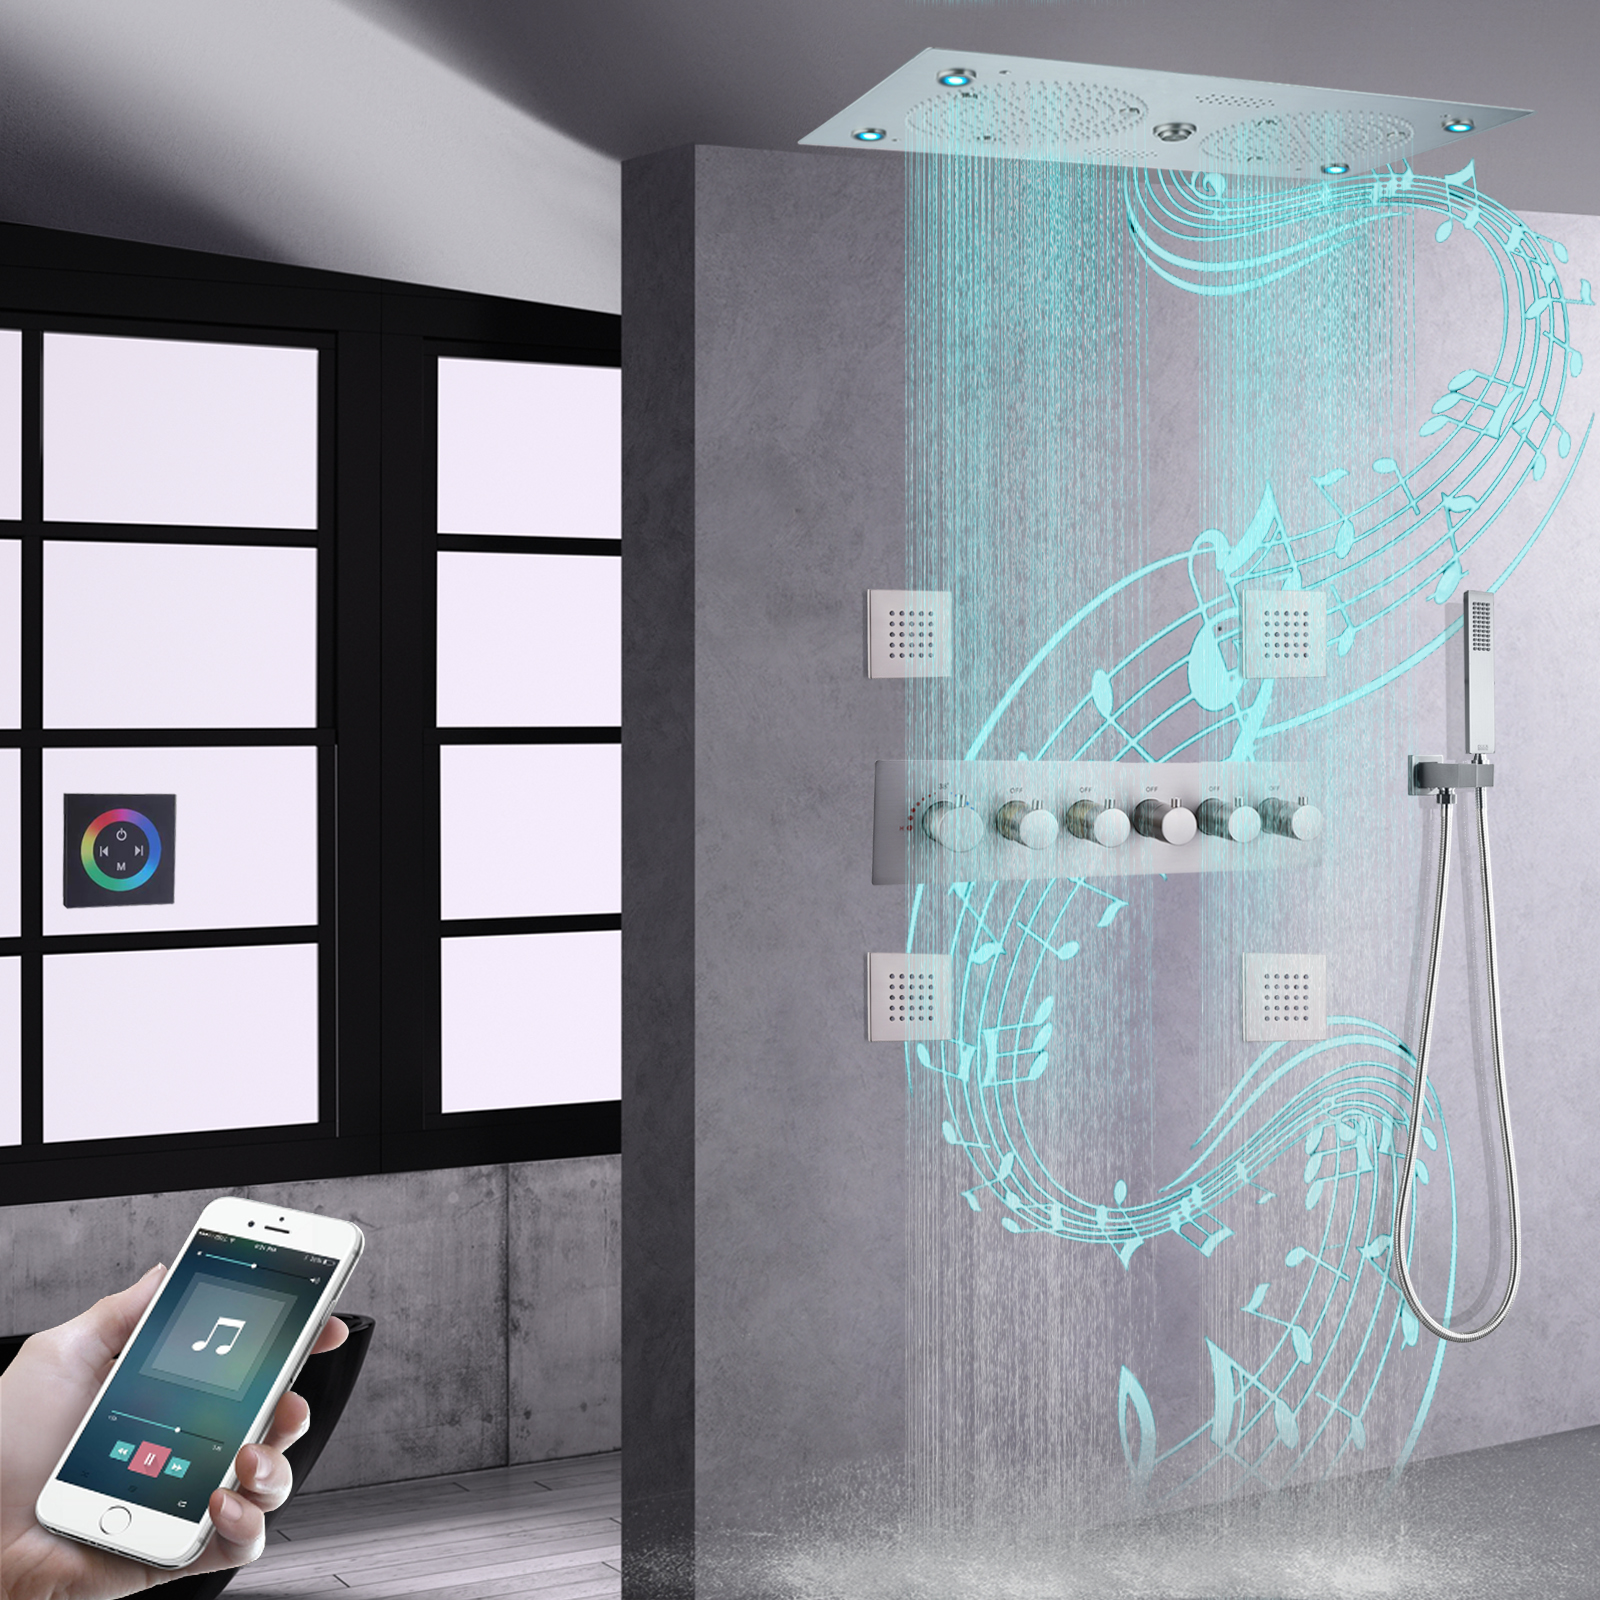 Cabezal de ducha de níquel cepillado empotrado en el techo, baño LED de 620x320mm con música, juego de grifo de ducha